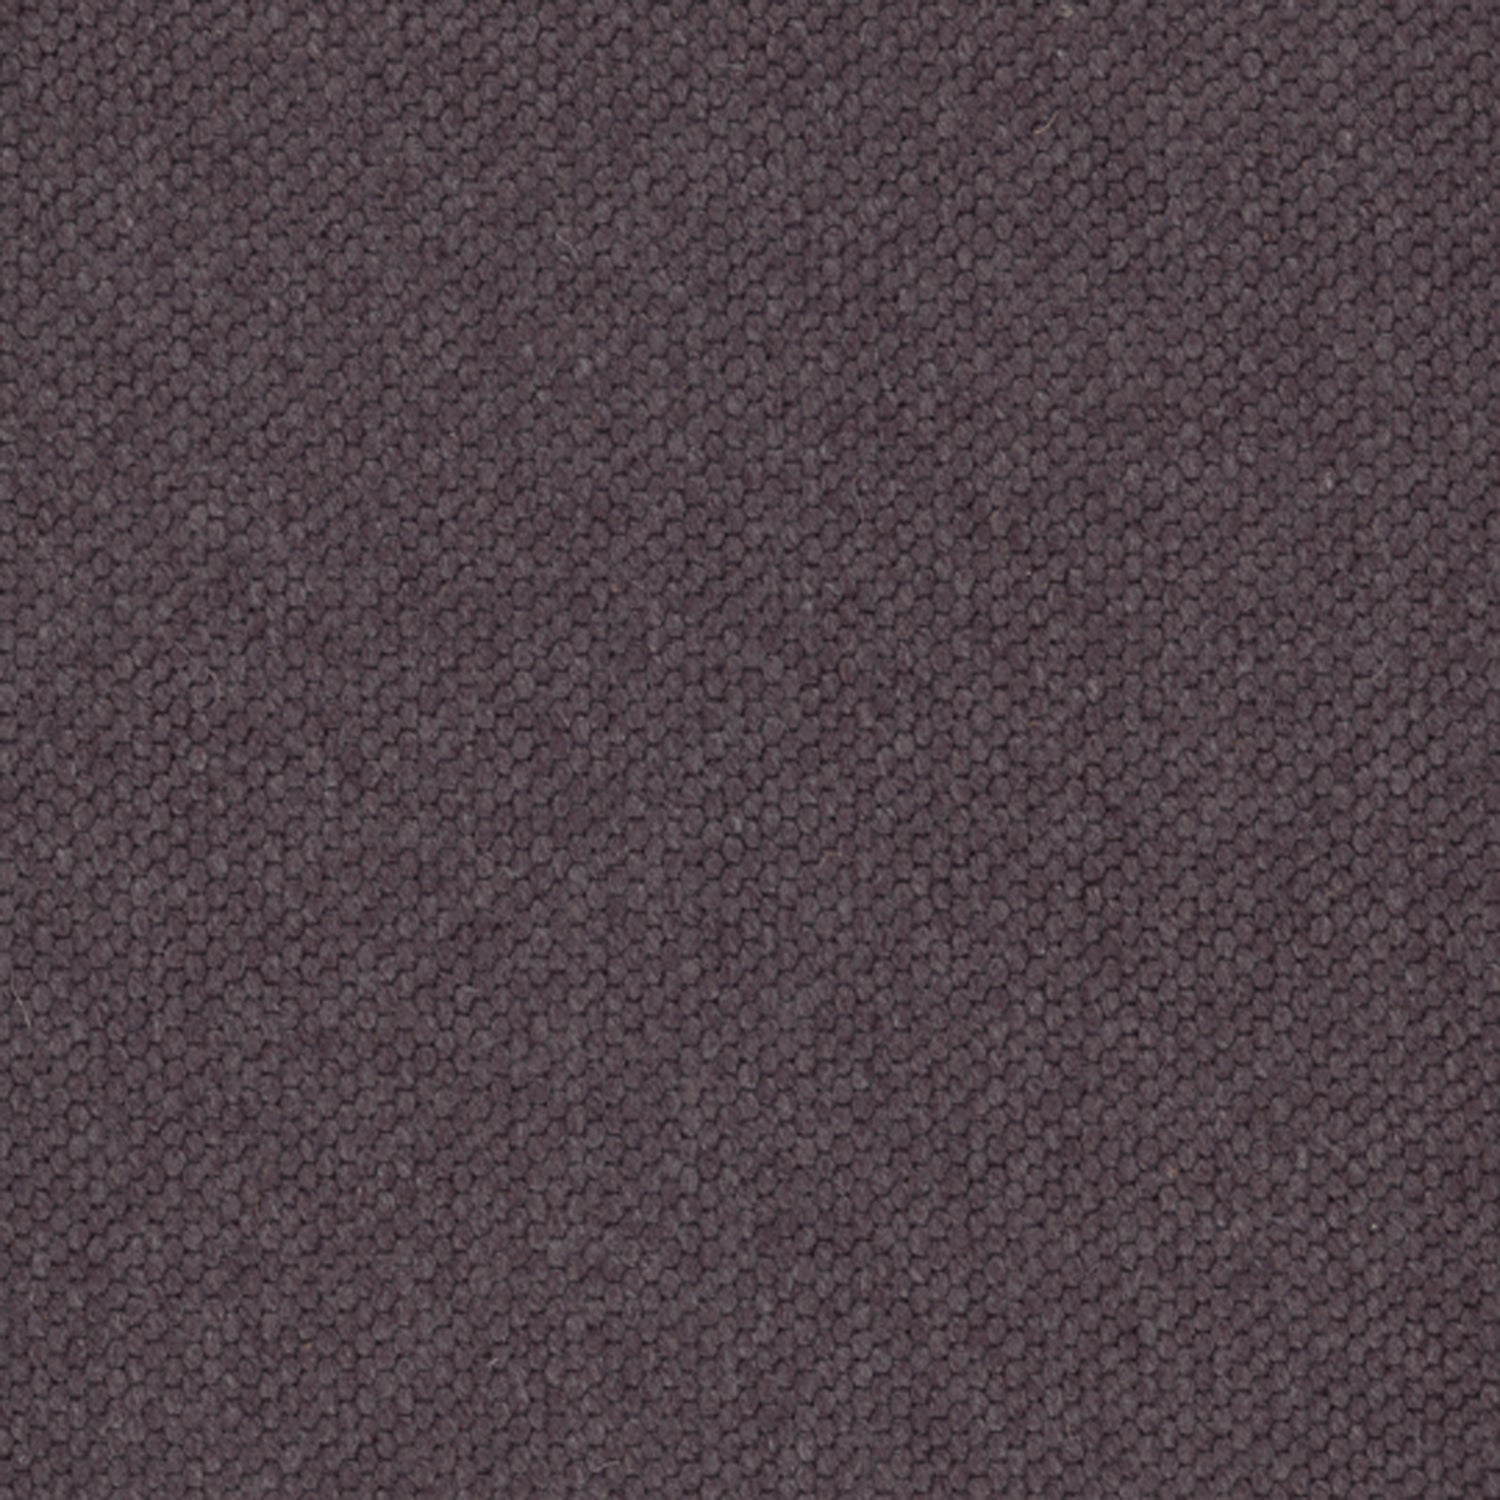 Wool broadloom carpet swatch in a chunky grid weave in dark purple.